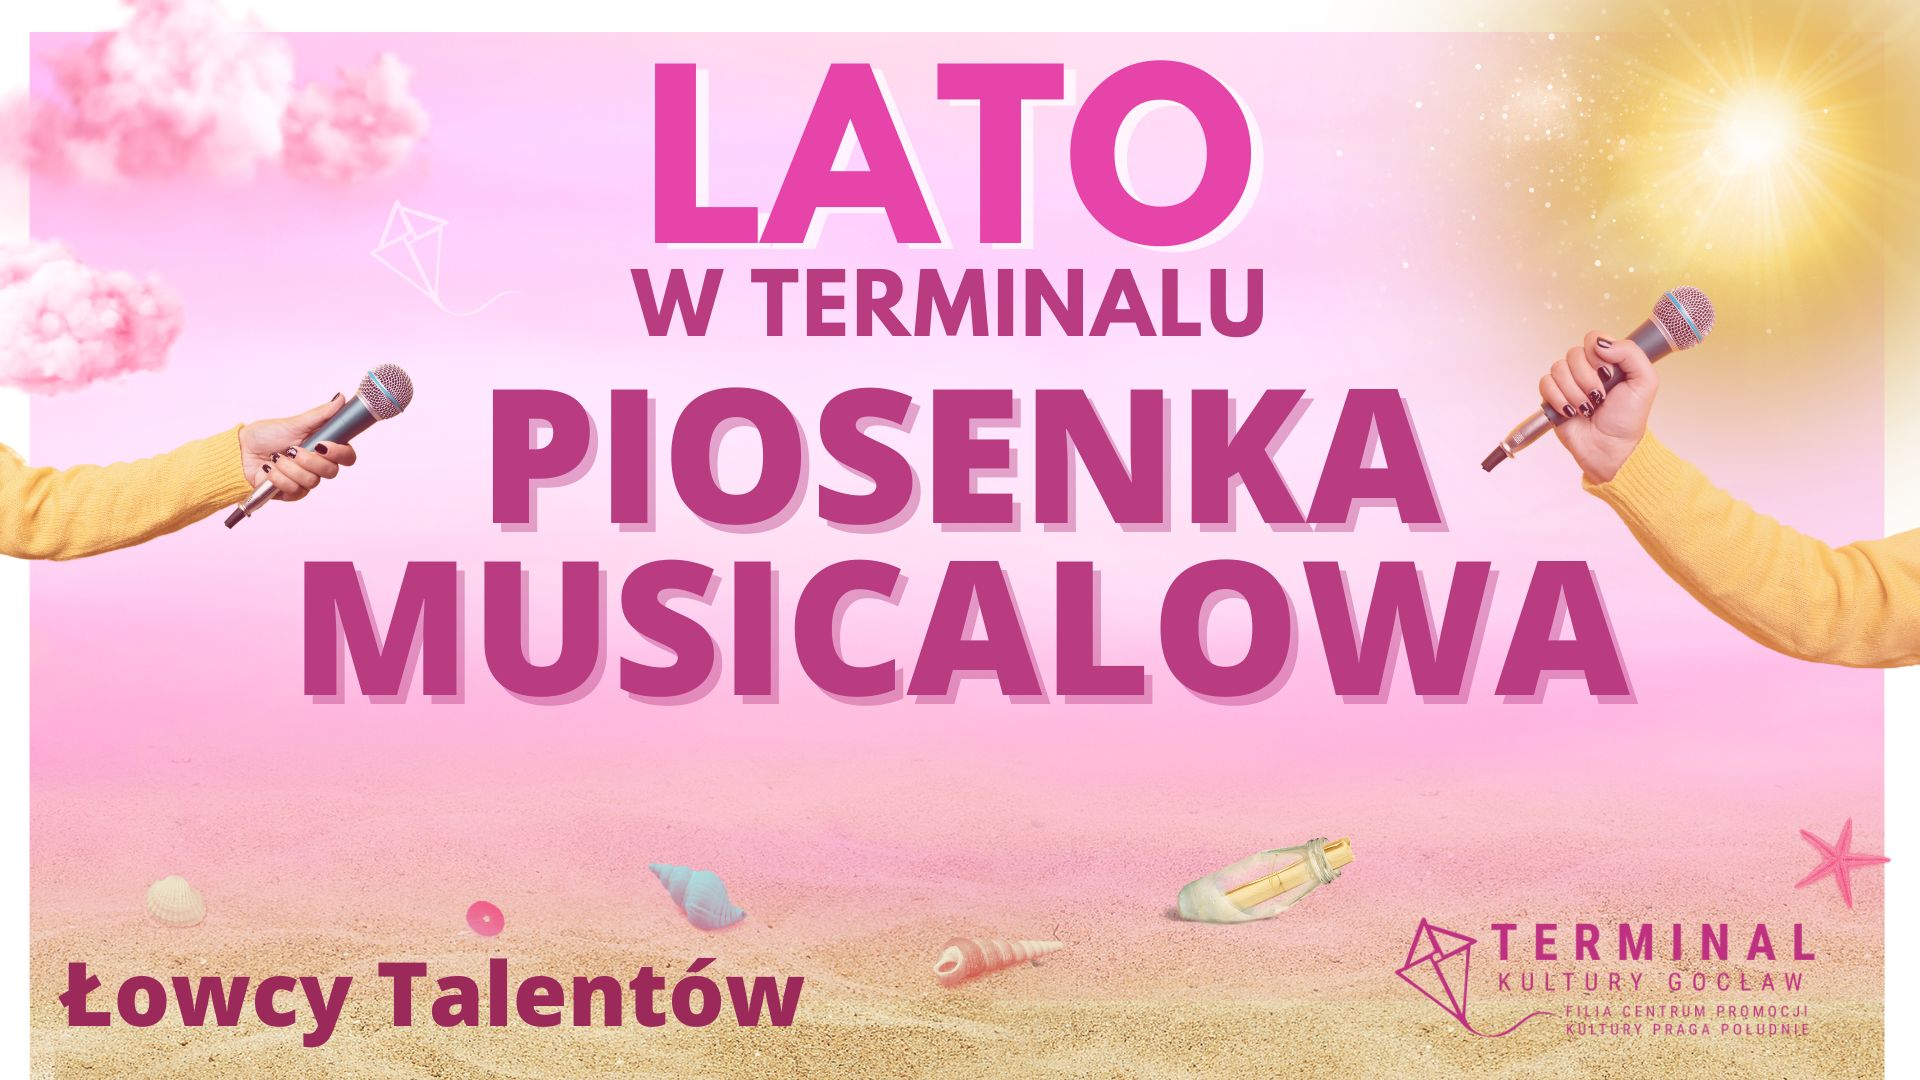 LATO - PIOSENKA MUSICALOWA Łowcy Talentów